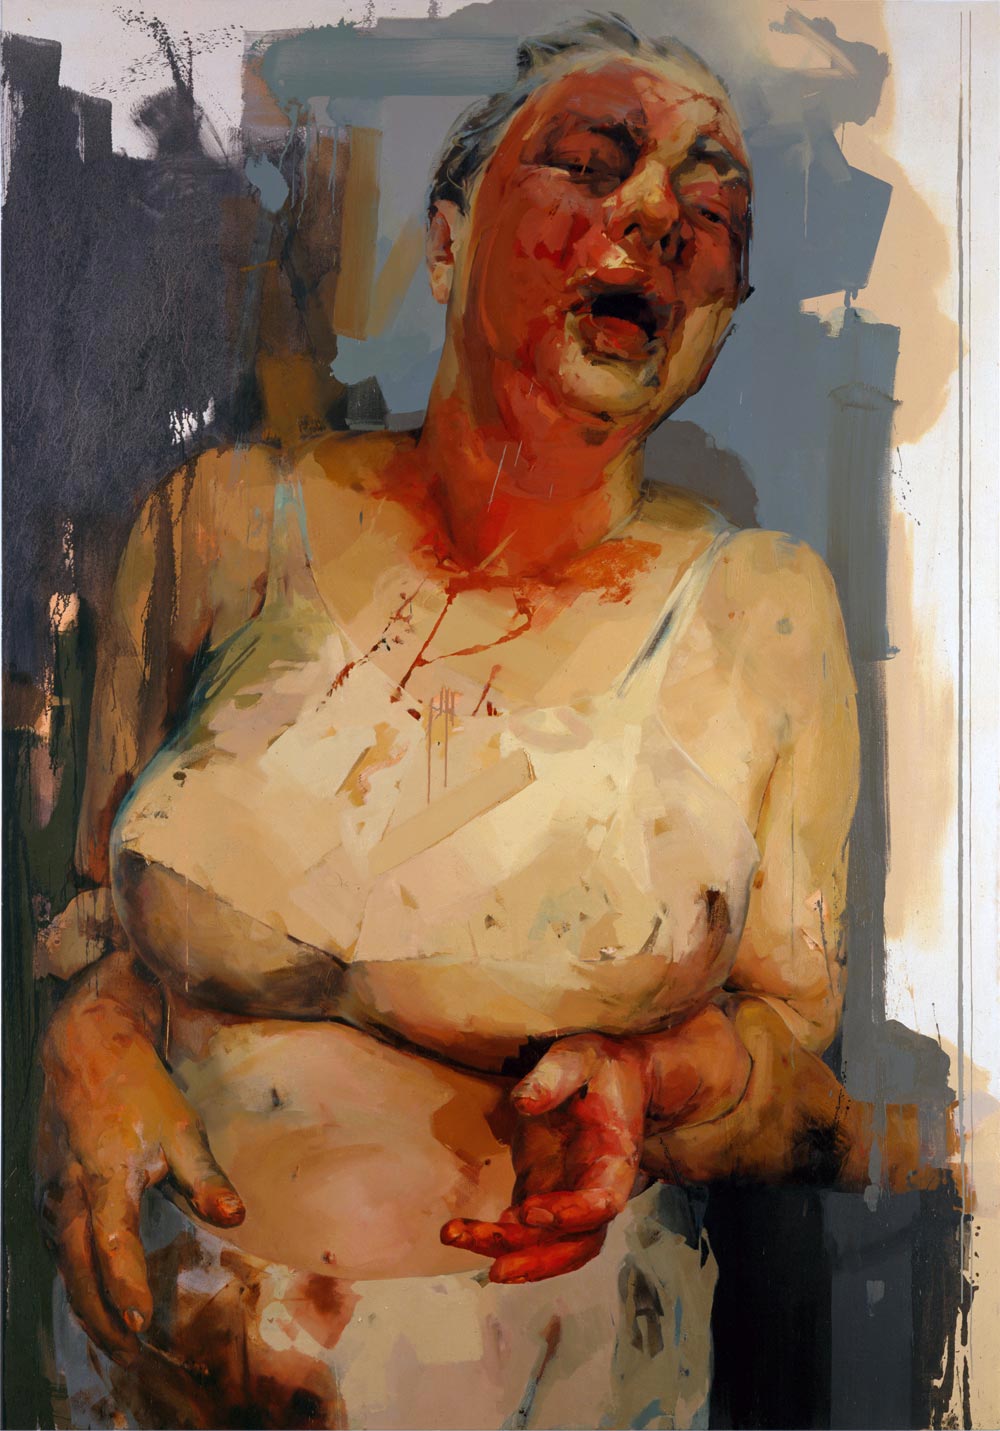 Jenny Saville, Pause, 2002-2003, Oil on canvas